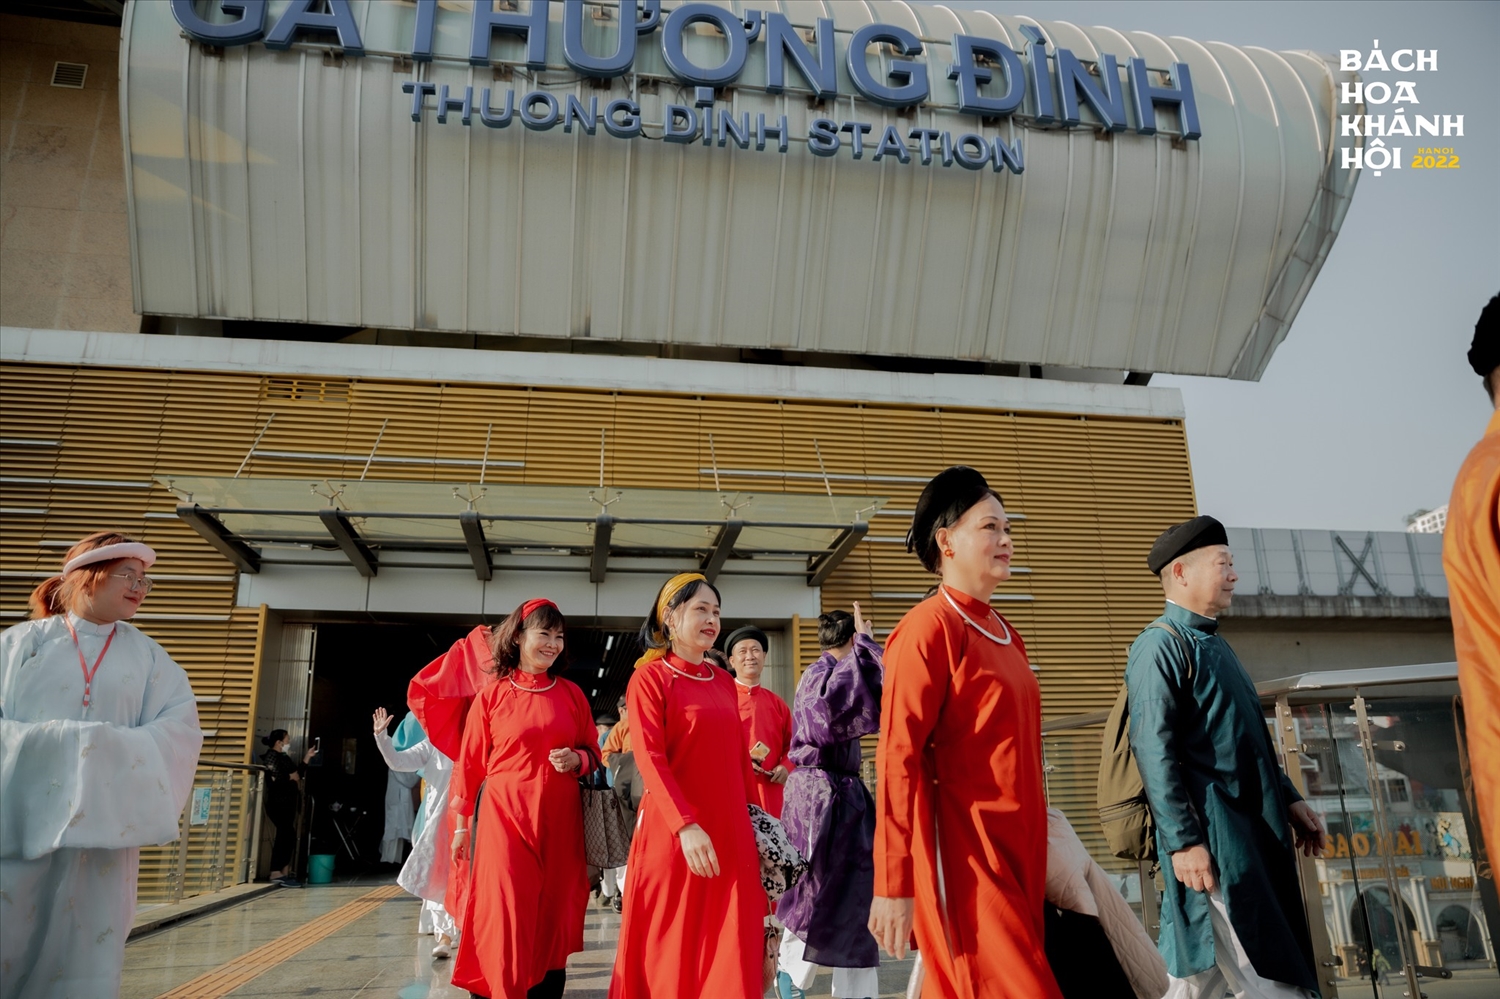 Chuyến tàu cùng đoàn diễu hành từ ga Cát Linh tới bến Thượng Đình tại Bách Hoa Khánh Hội